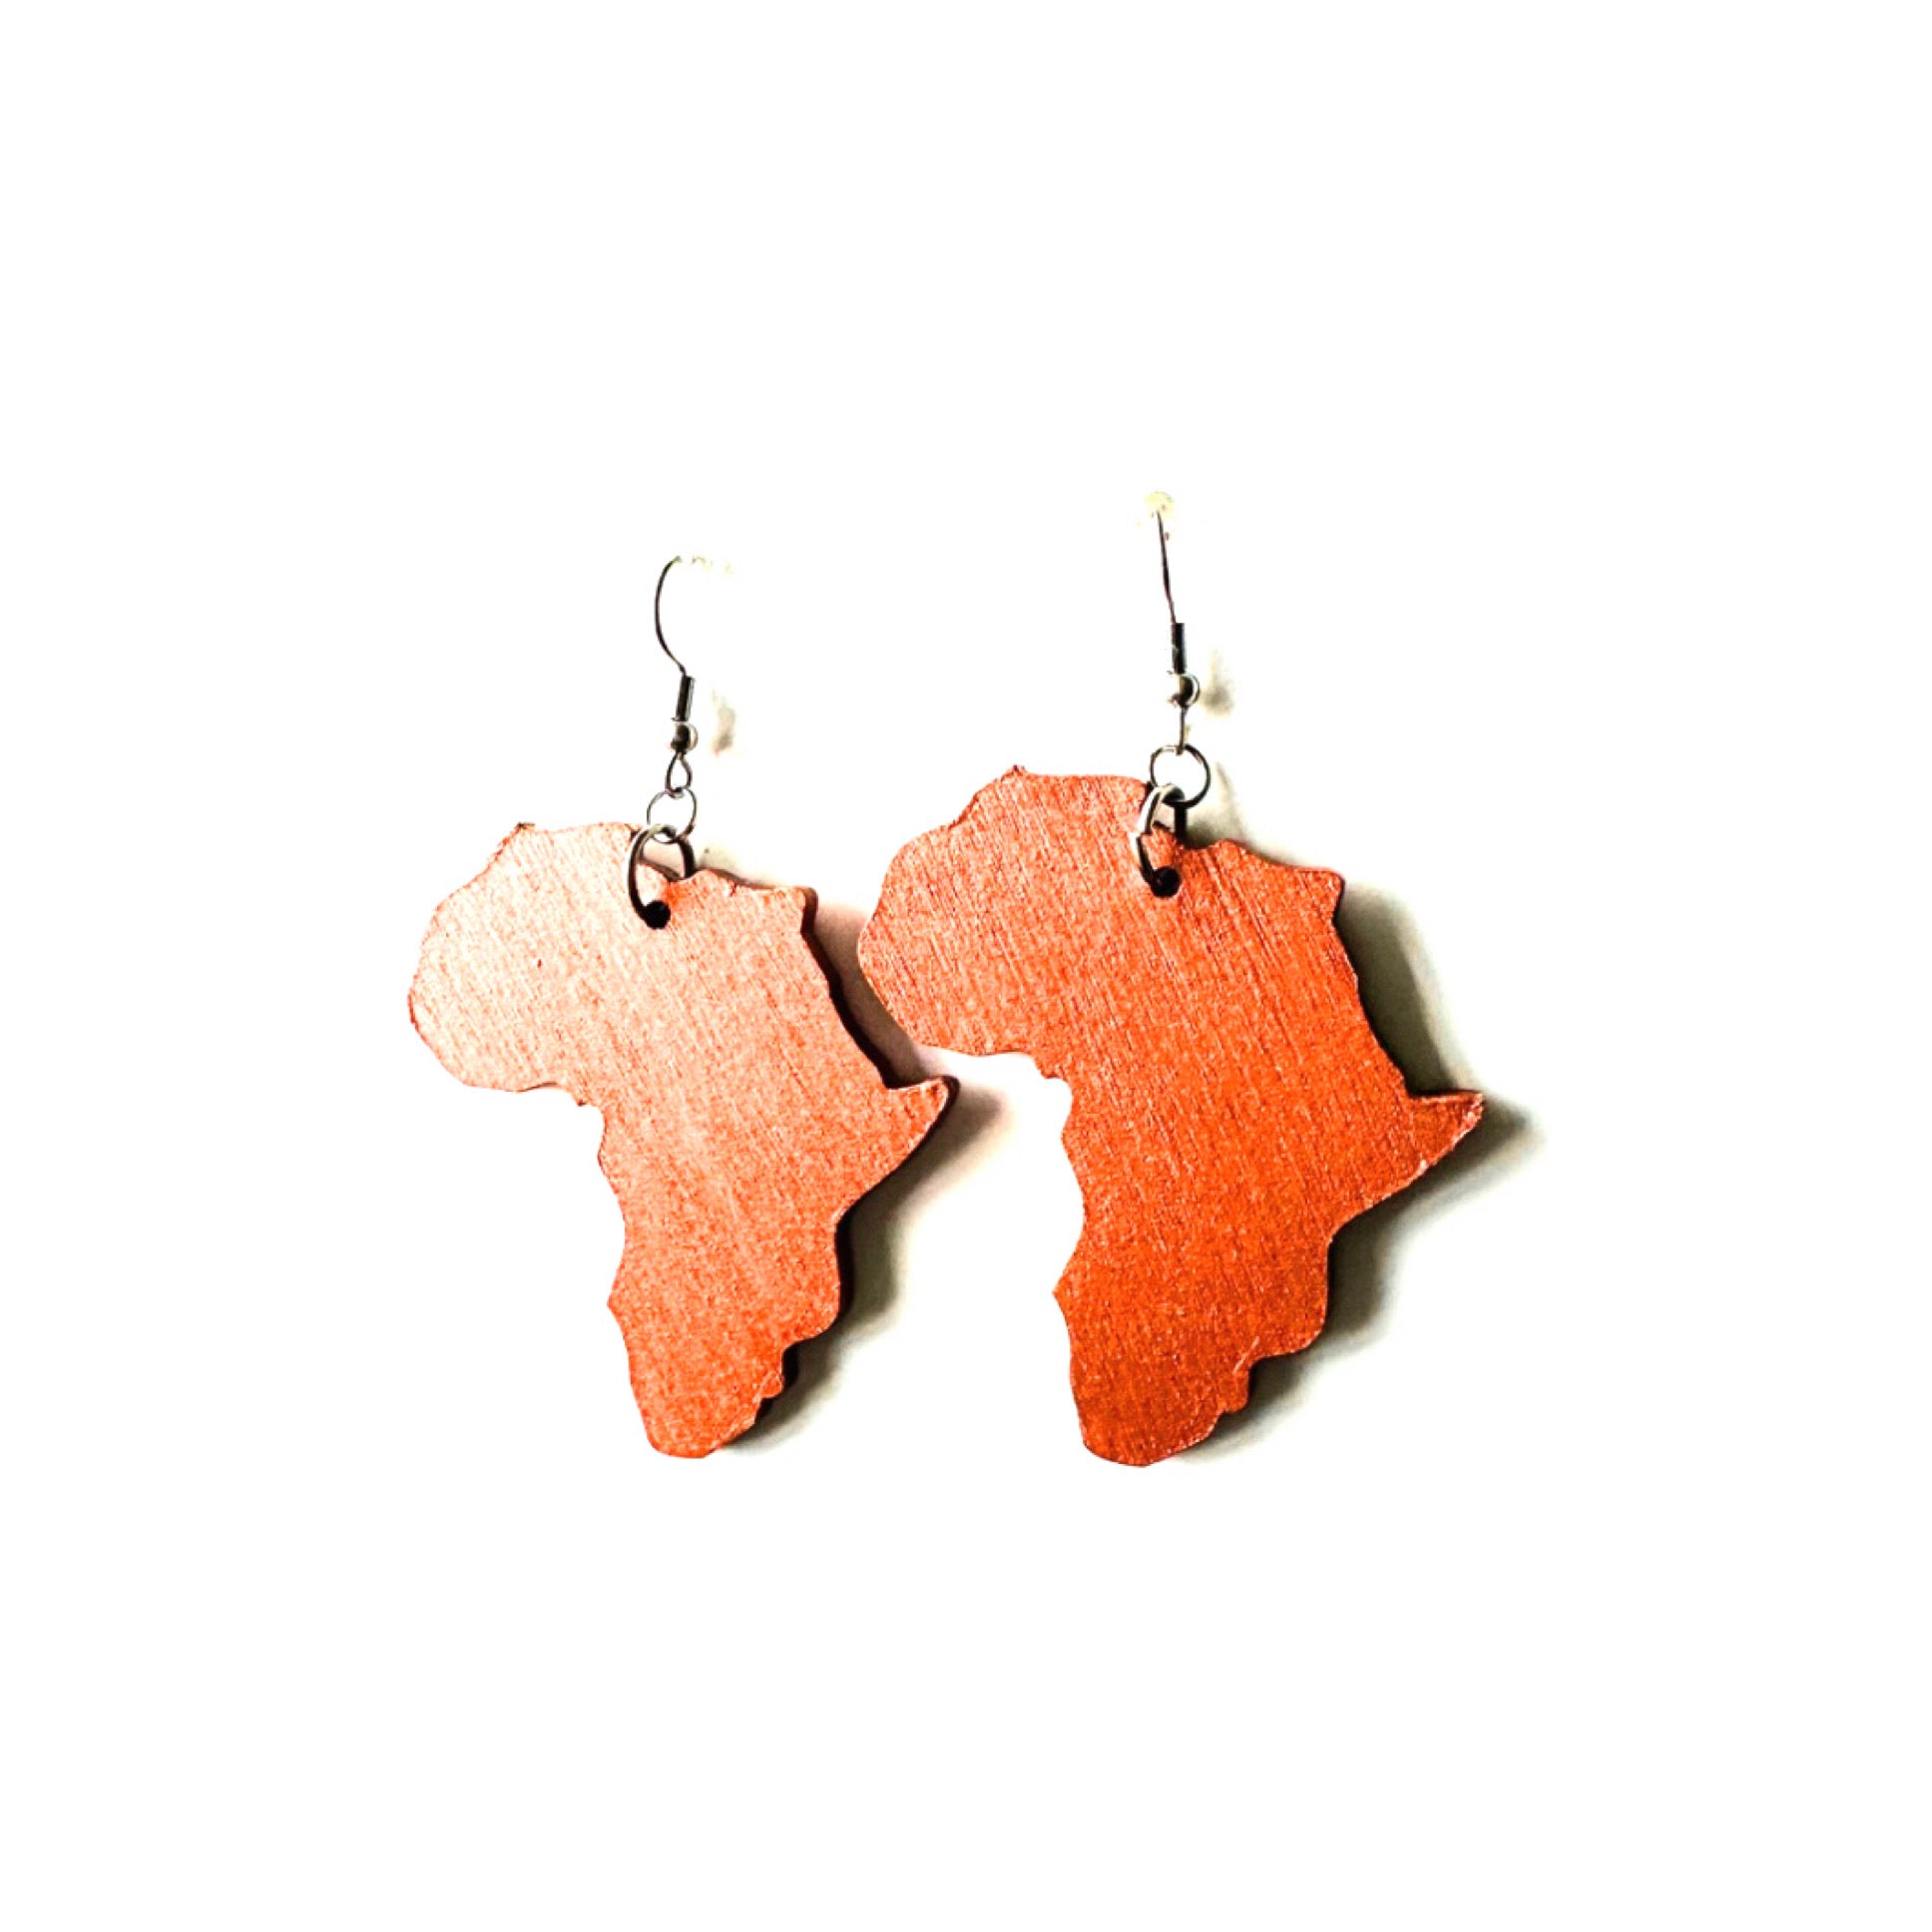 Africa Map Wood Earrings - Copper